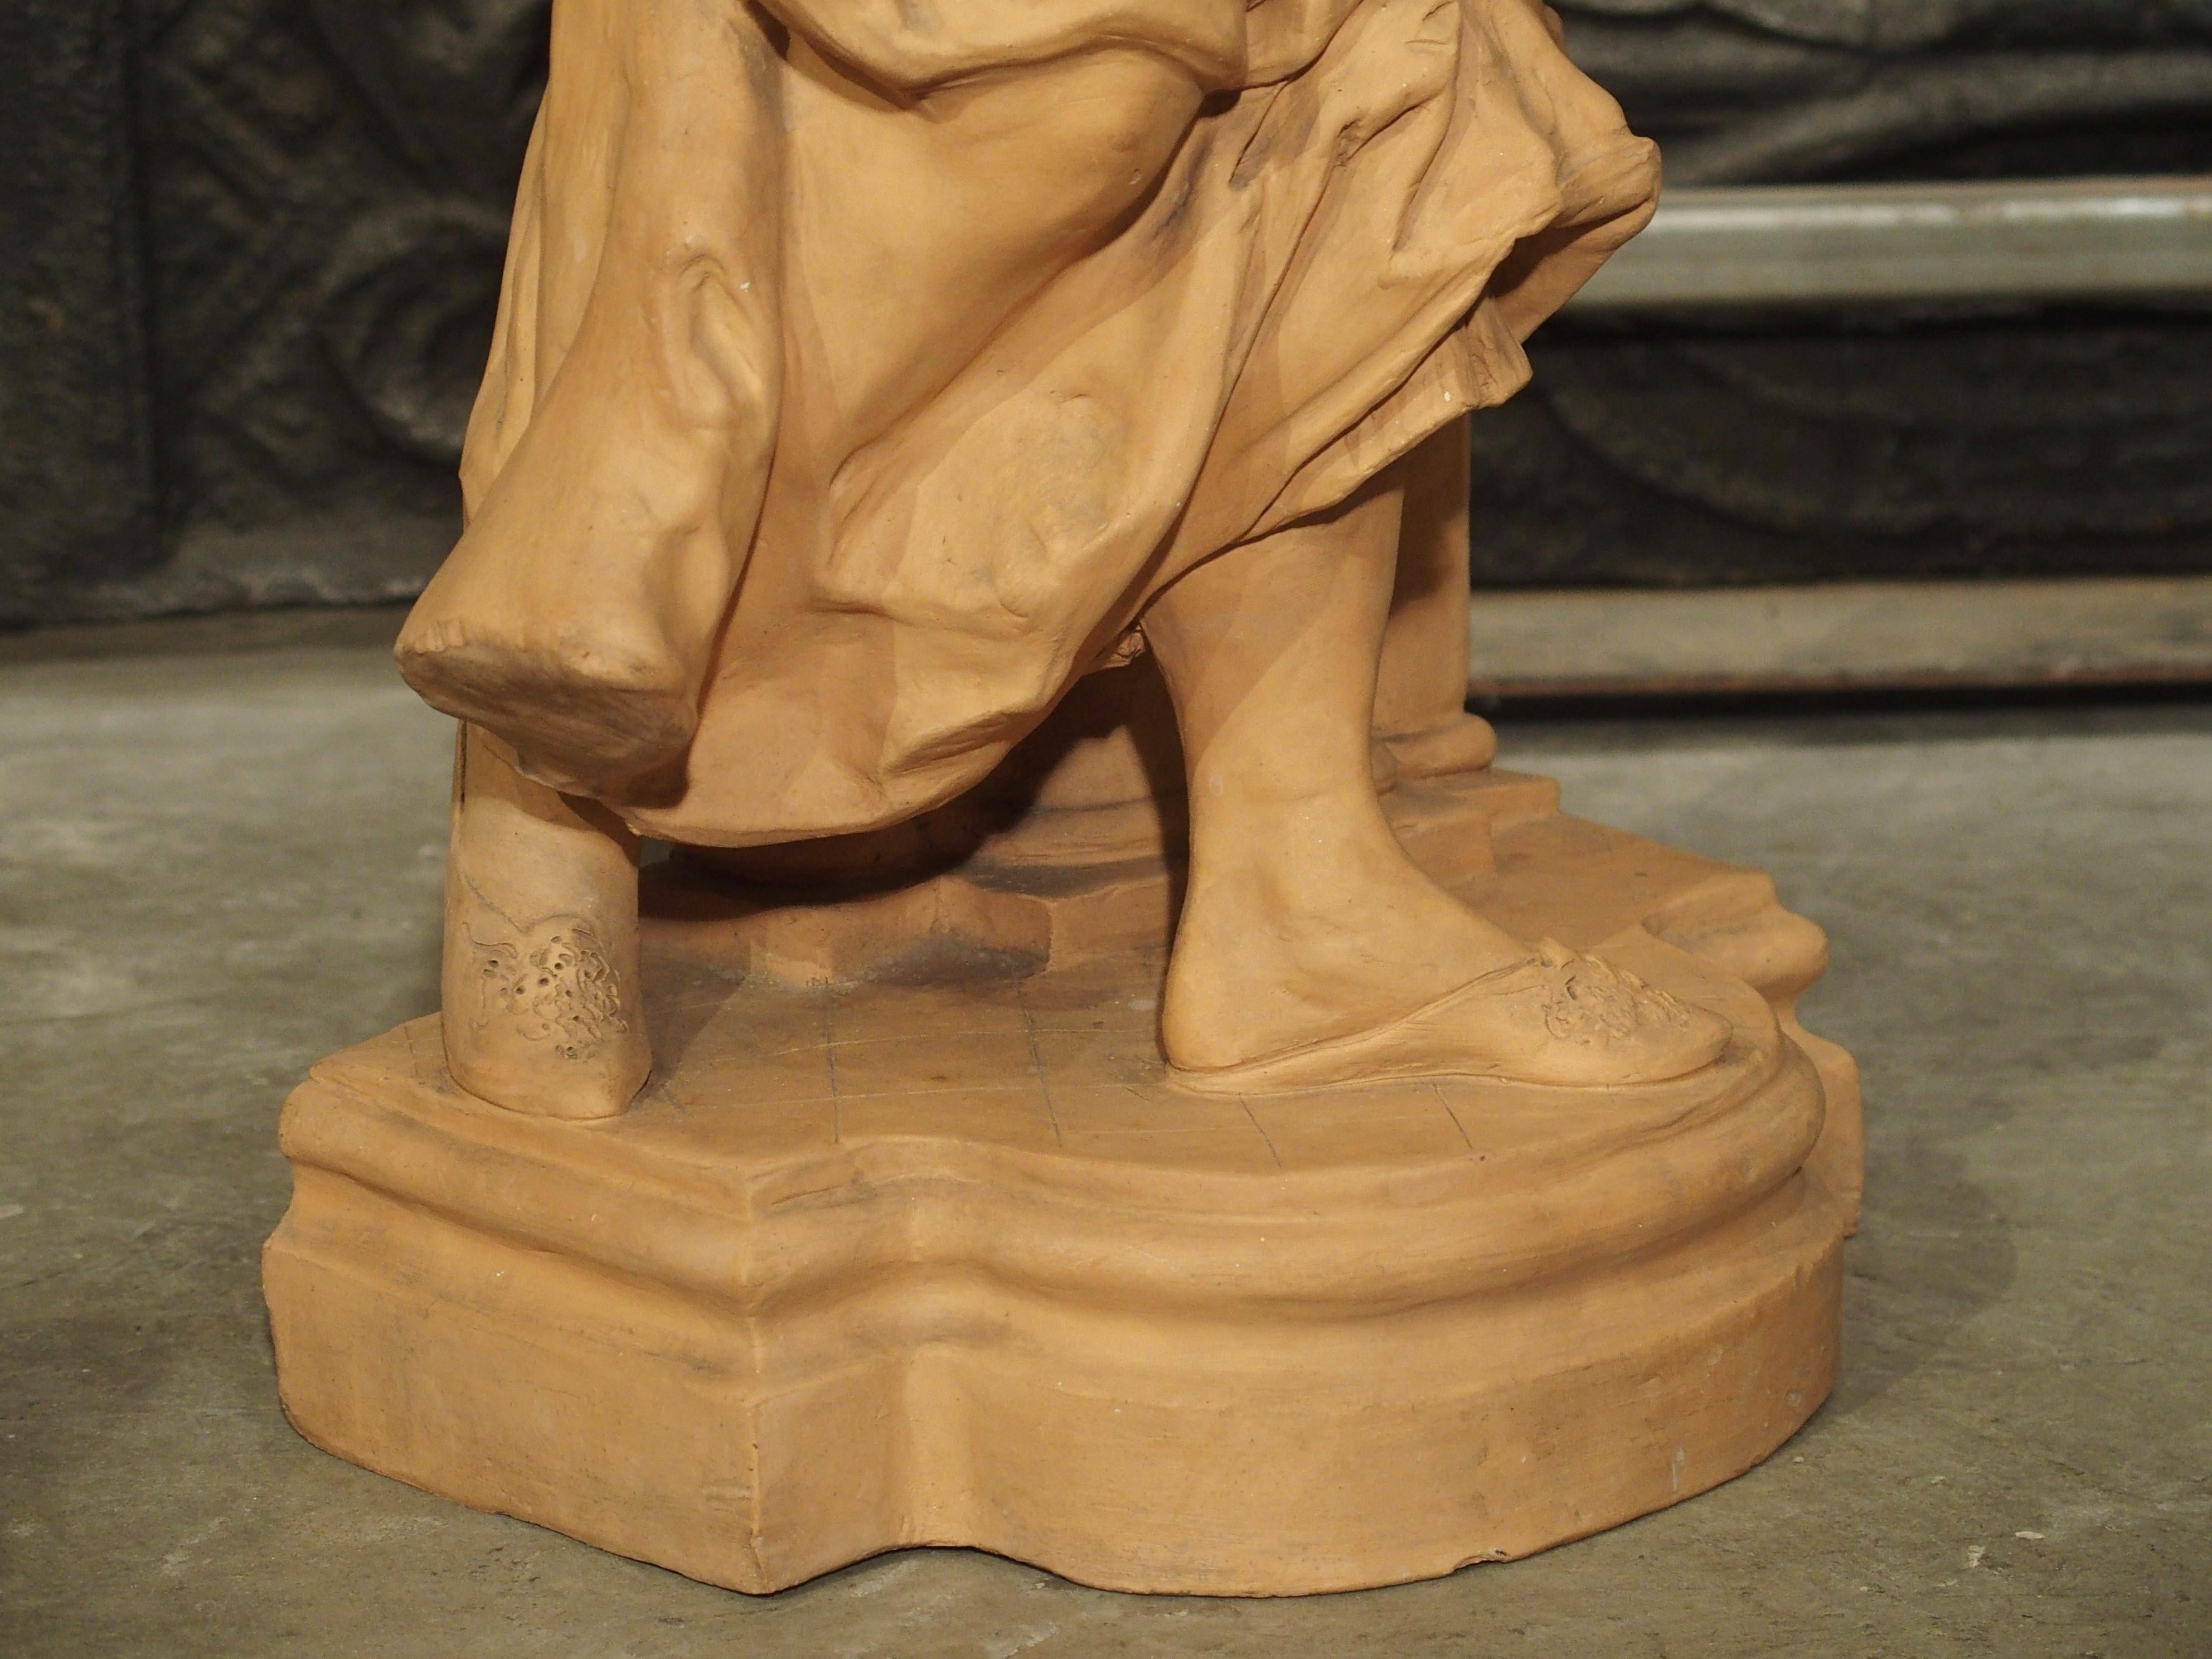 Cette statue en terre cuite bien détaillée d'une femme remplissant une cruche d'eau date de la fin du XIXe siècle et mesure plus de 30 pouces de haut. La femme tient une cruche sous le bec d'une fontaine ; le bec est représenté par un mascaron de